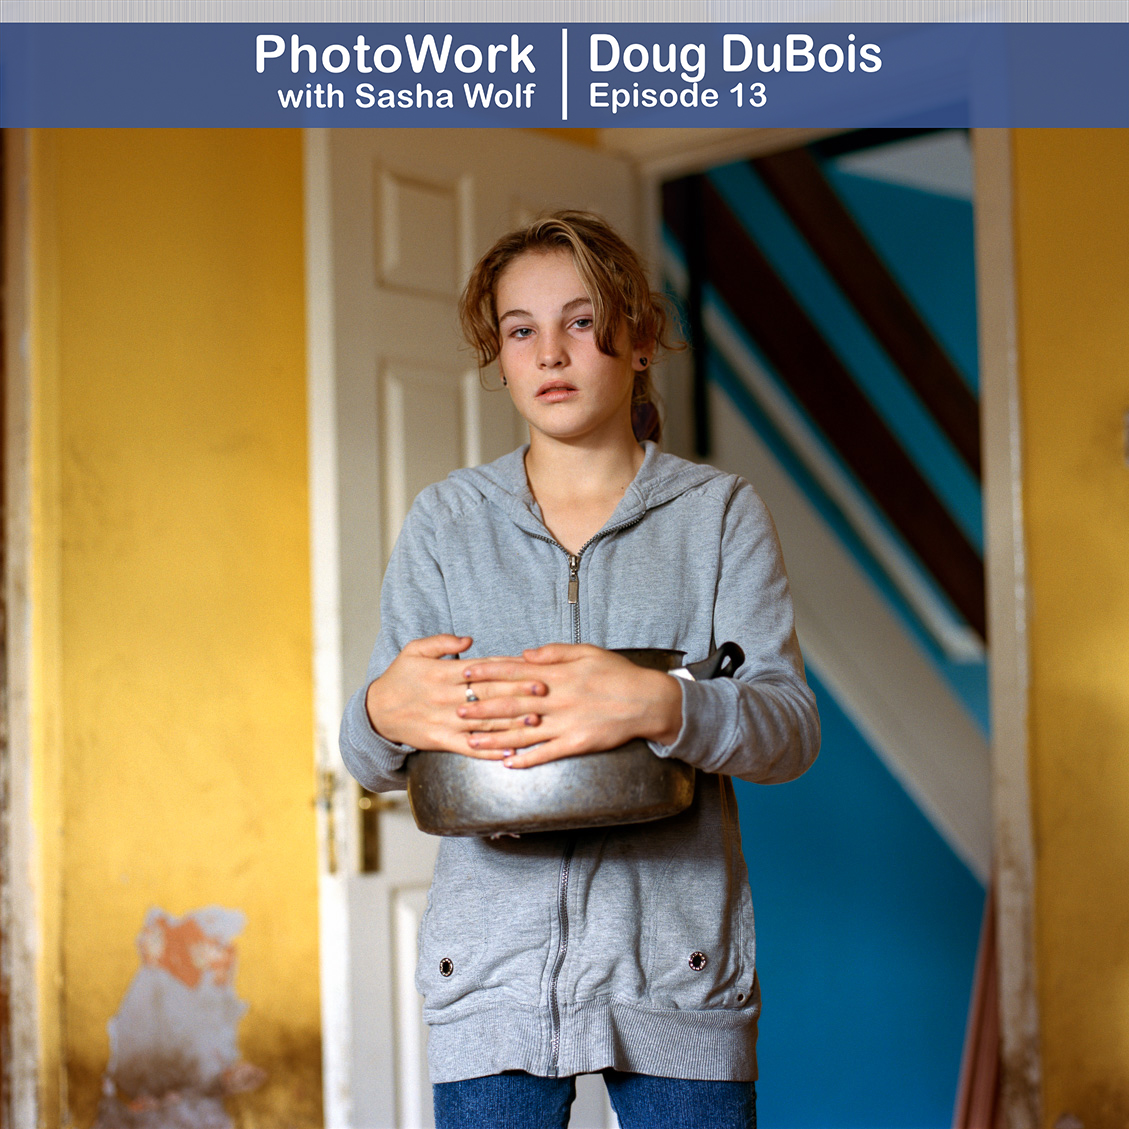 Doug DuBois